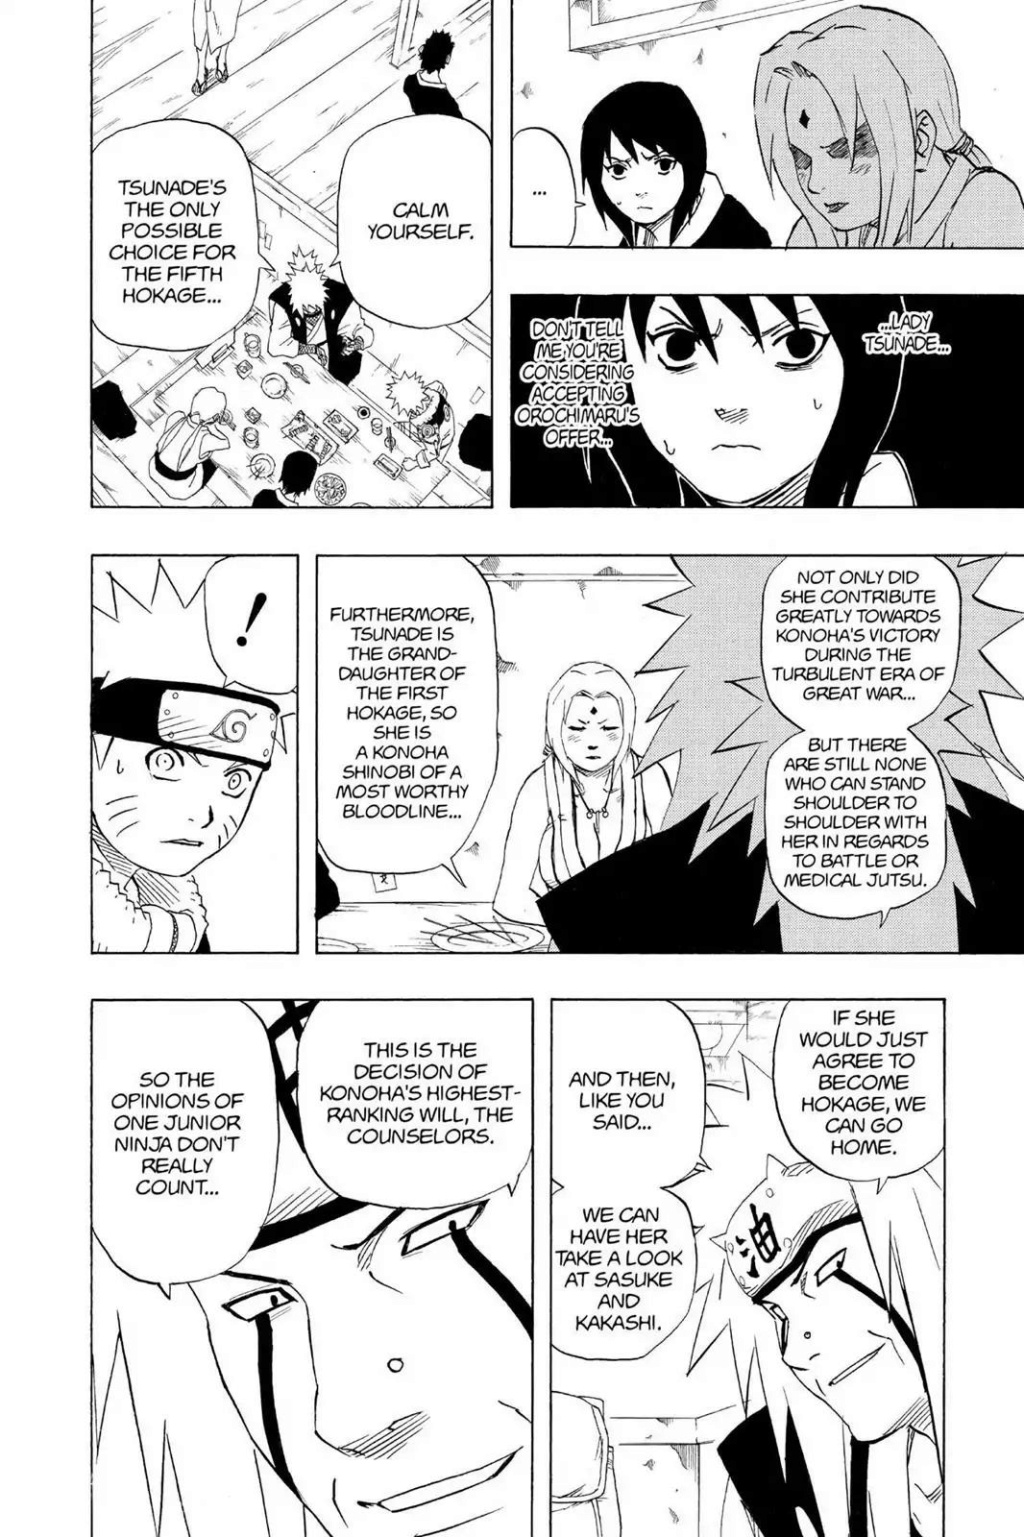 Naruto SM e Tobirama  vs Tsunade e Minato - Página 4 04_27918